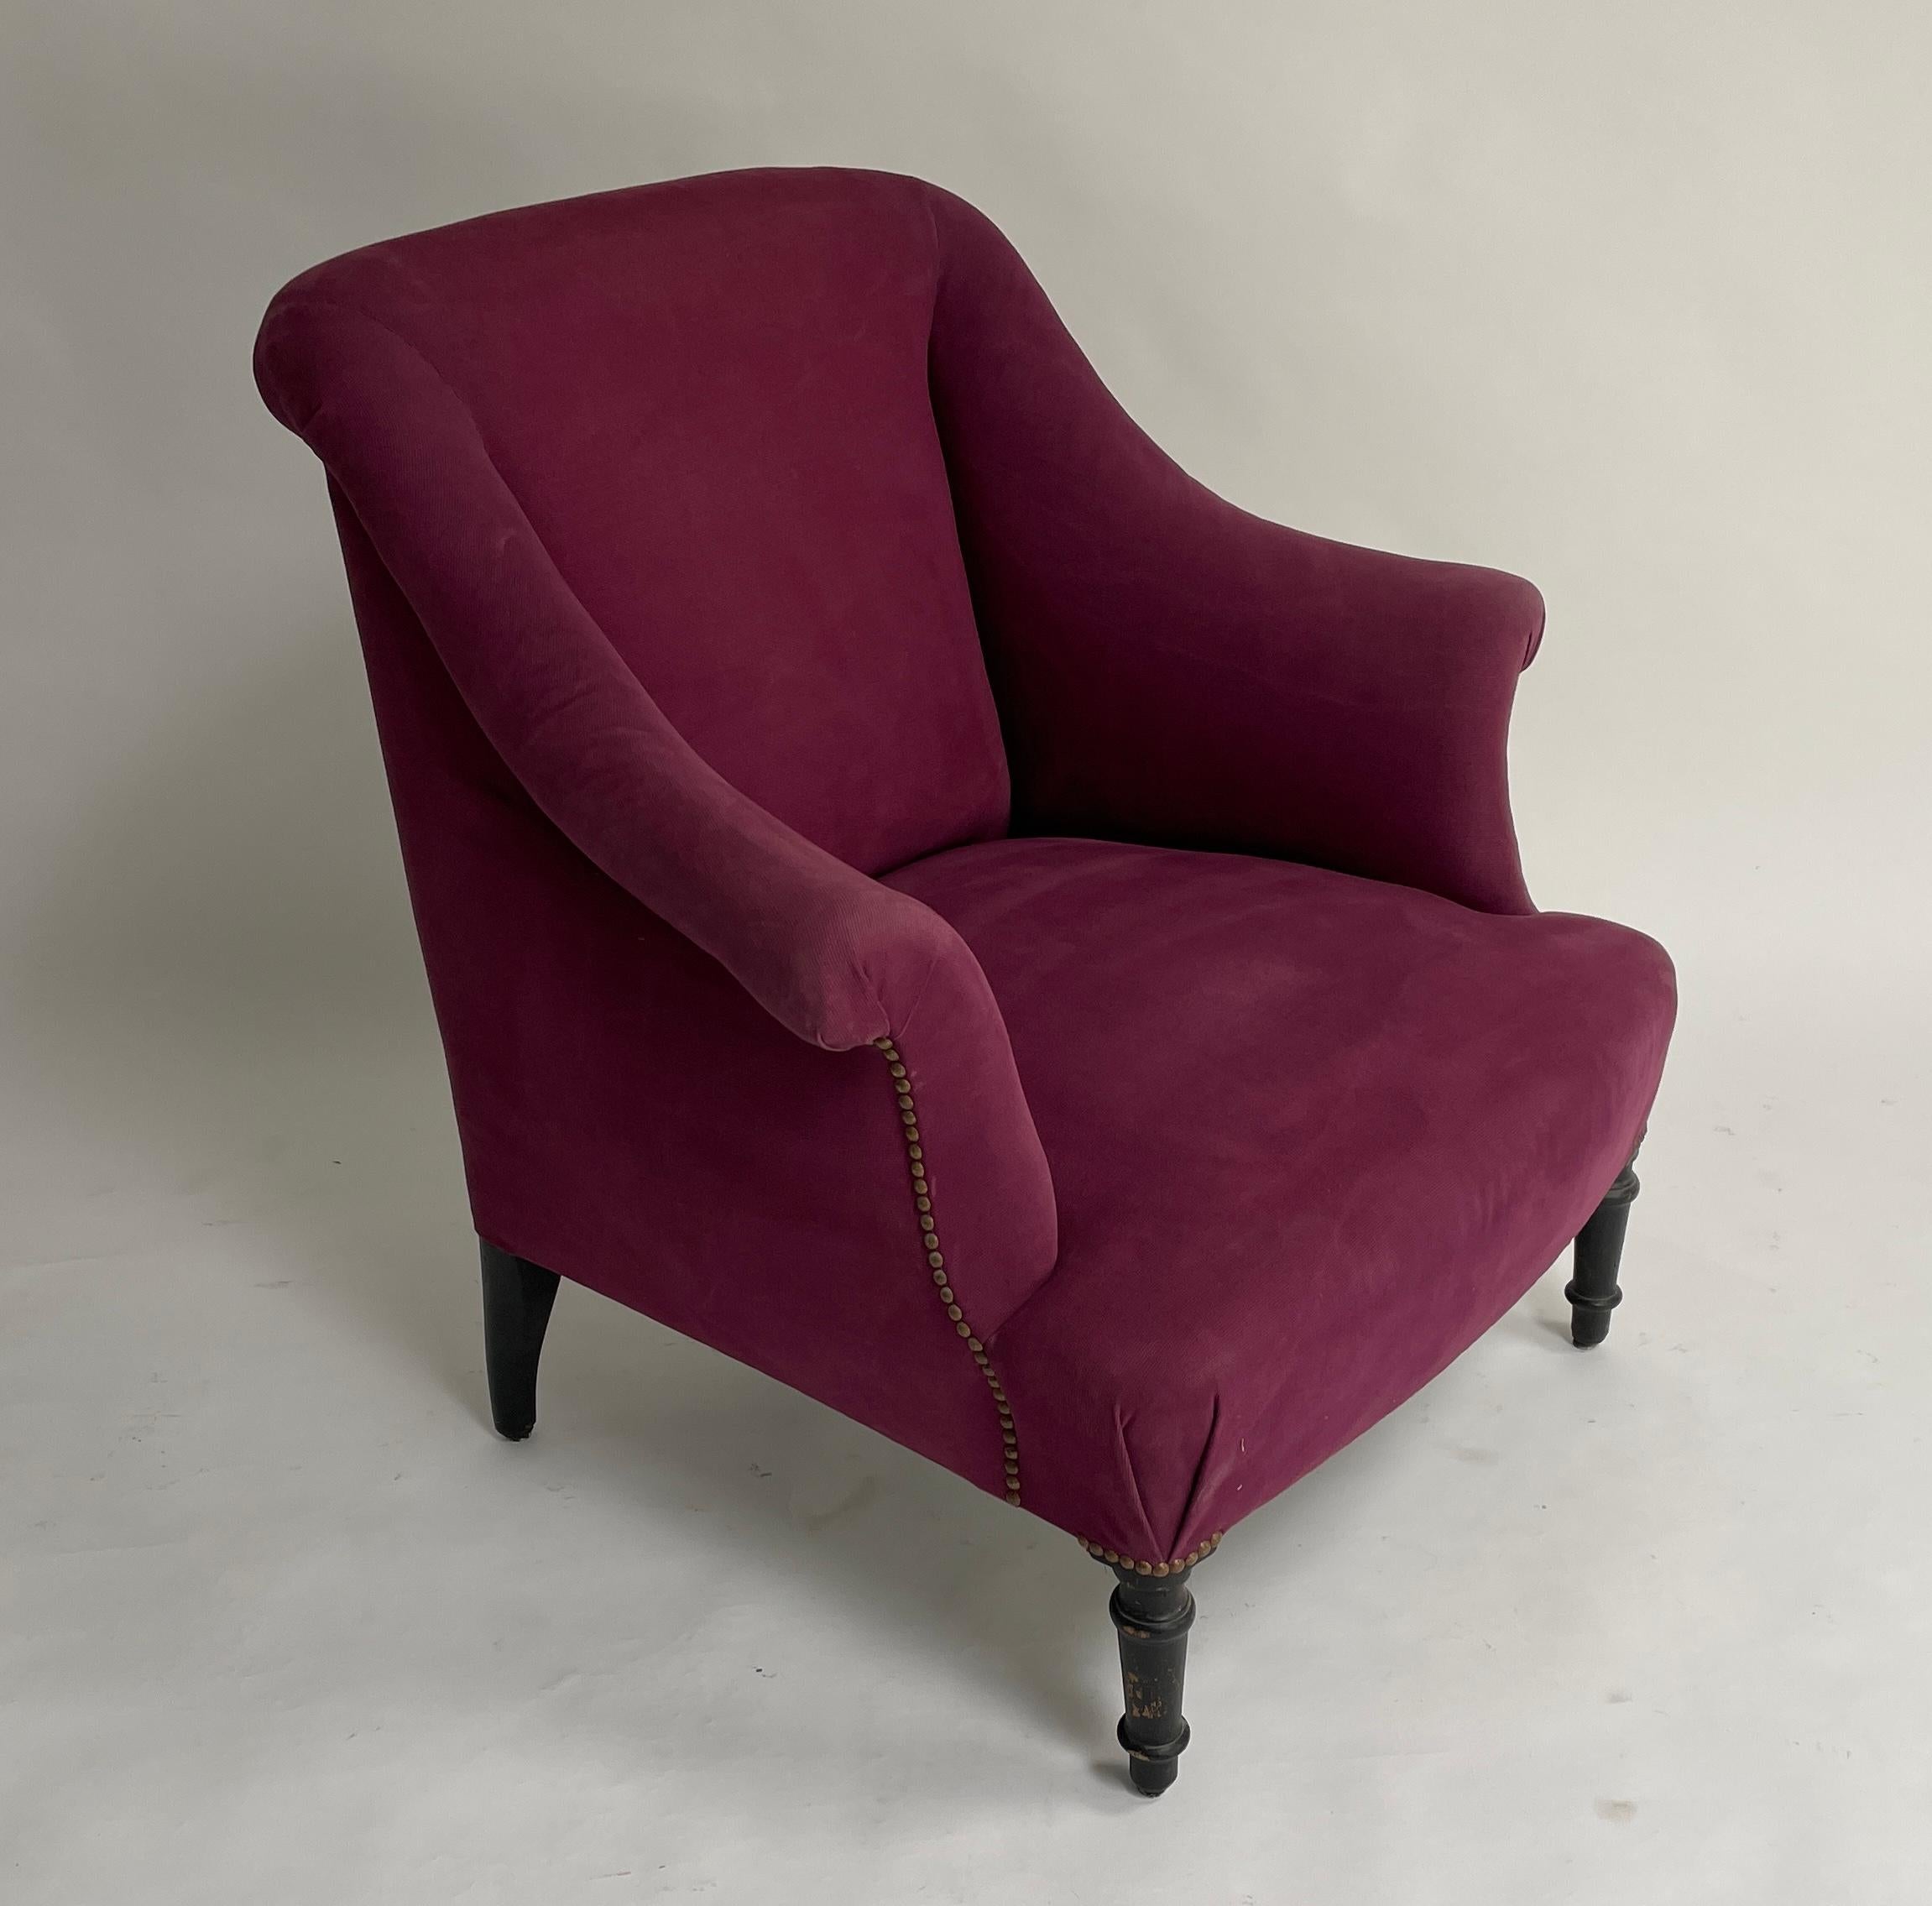 Original zweiteilige Duchesse Brisee. Sessel und Ottomane. Solider Zustand mit Leinenpolsterung und Nagelköpfen. Air Stuhl Abmessungen sind B: 26